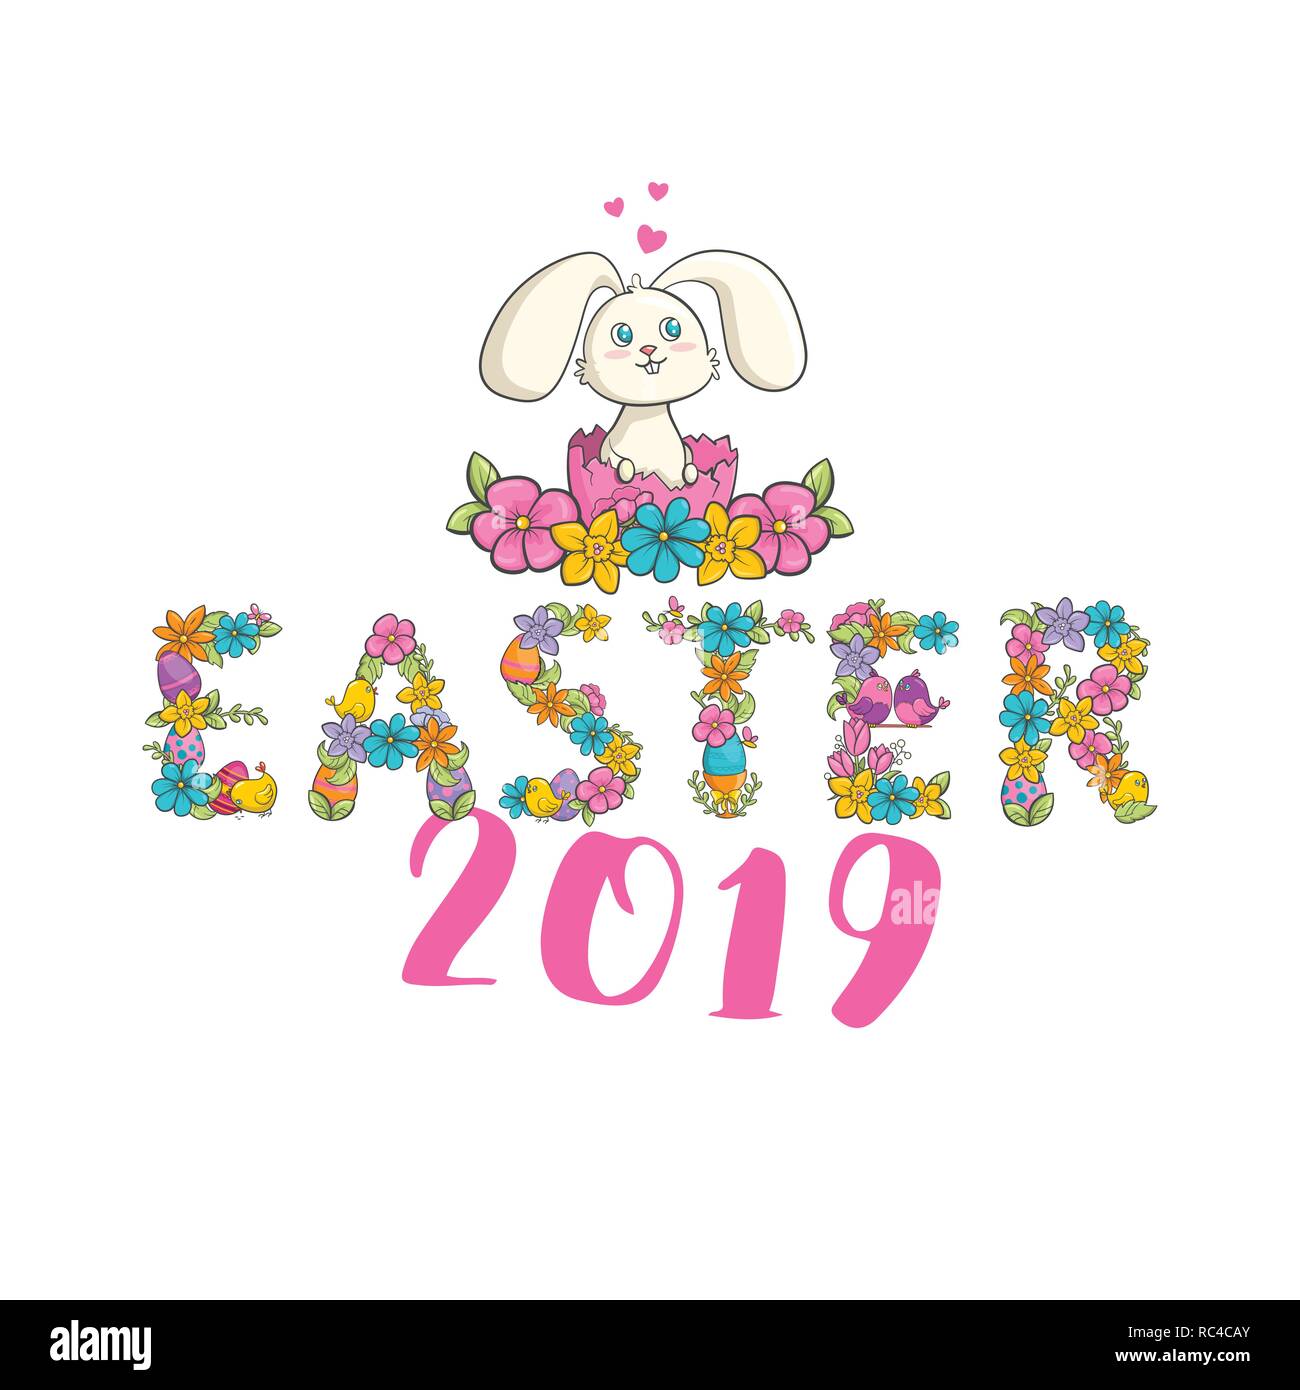 Easter Christian church festival card with cute bunny Stock Vector